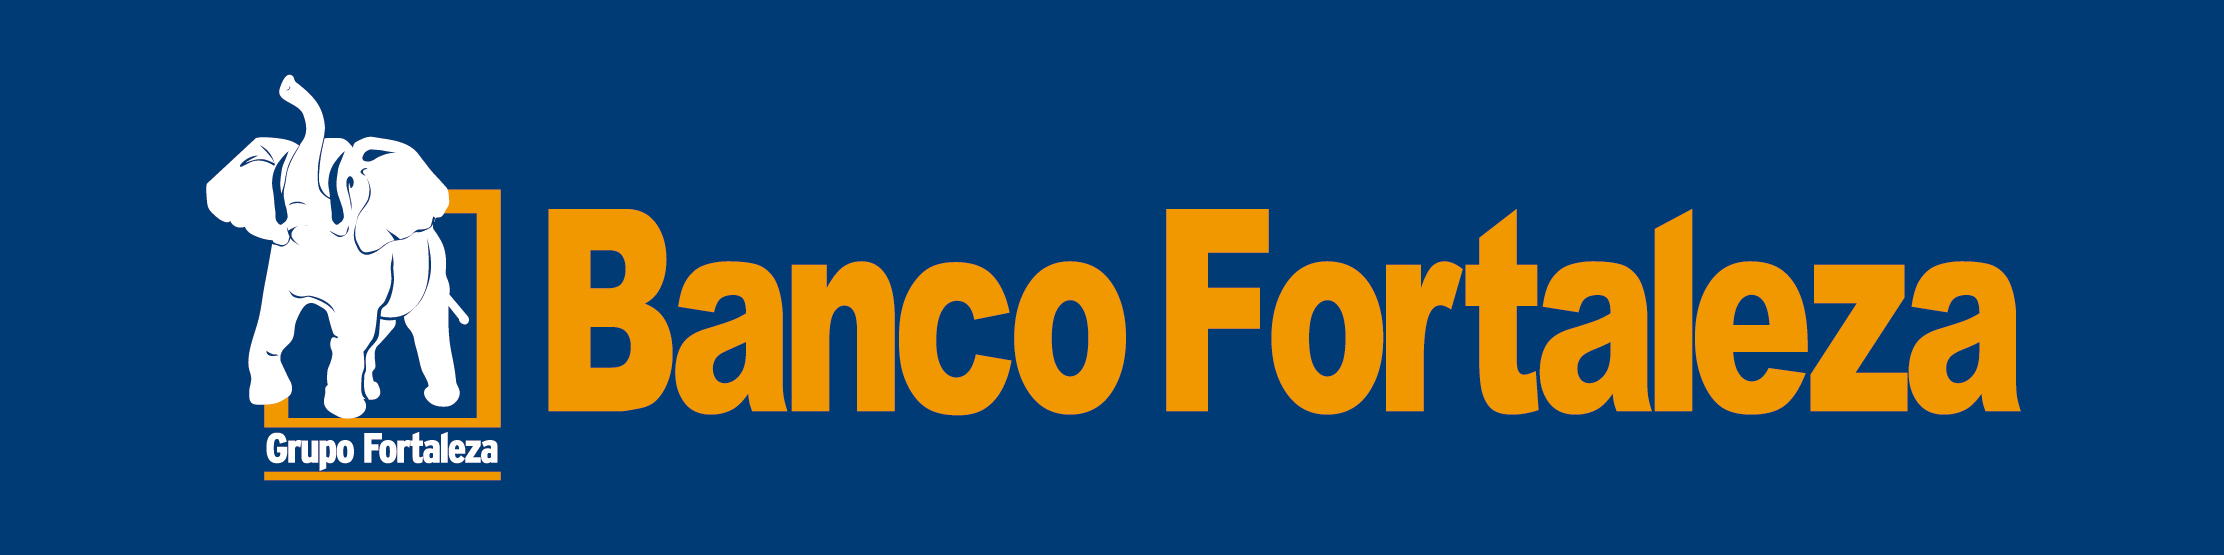 Logo_BANCO_FORTALEZA_-_act_03_2018_2